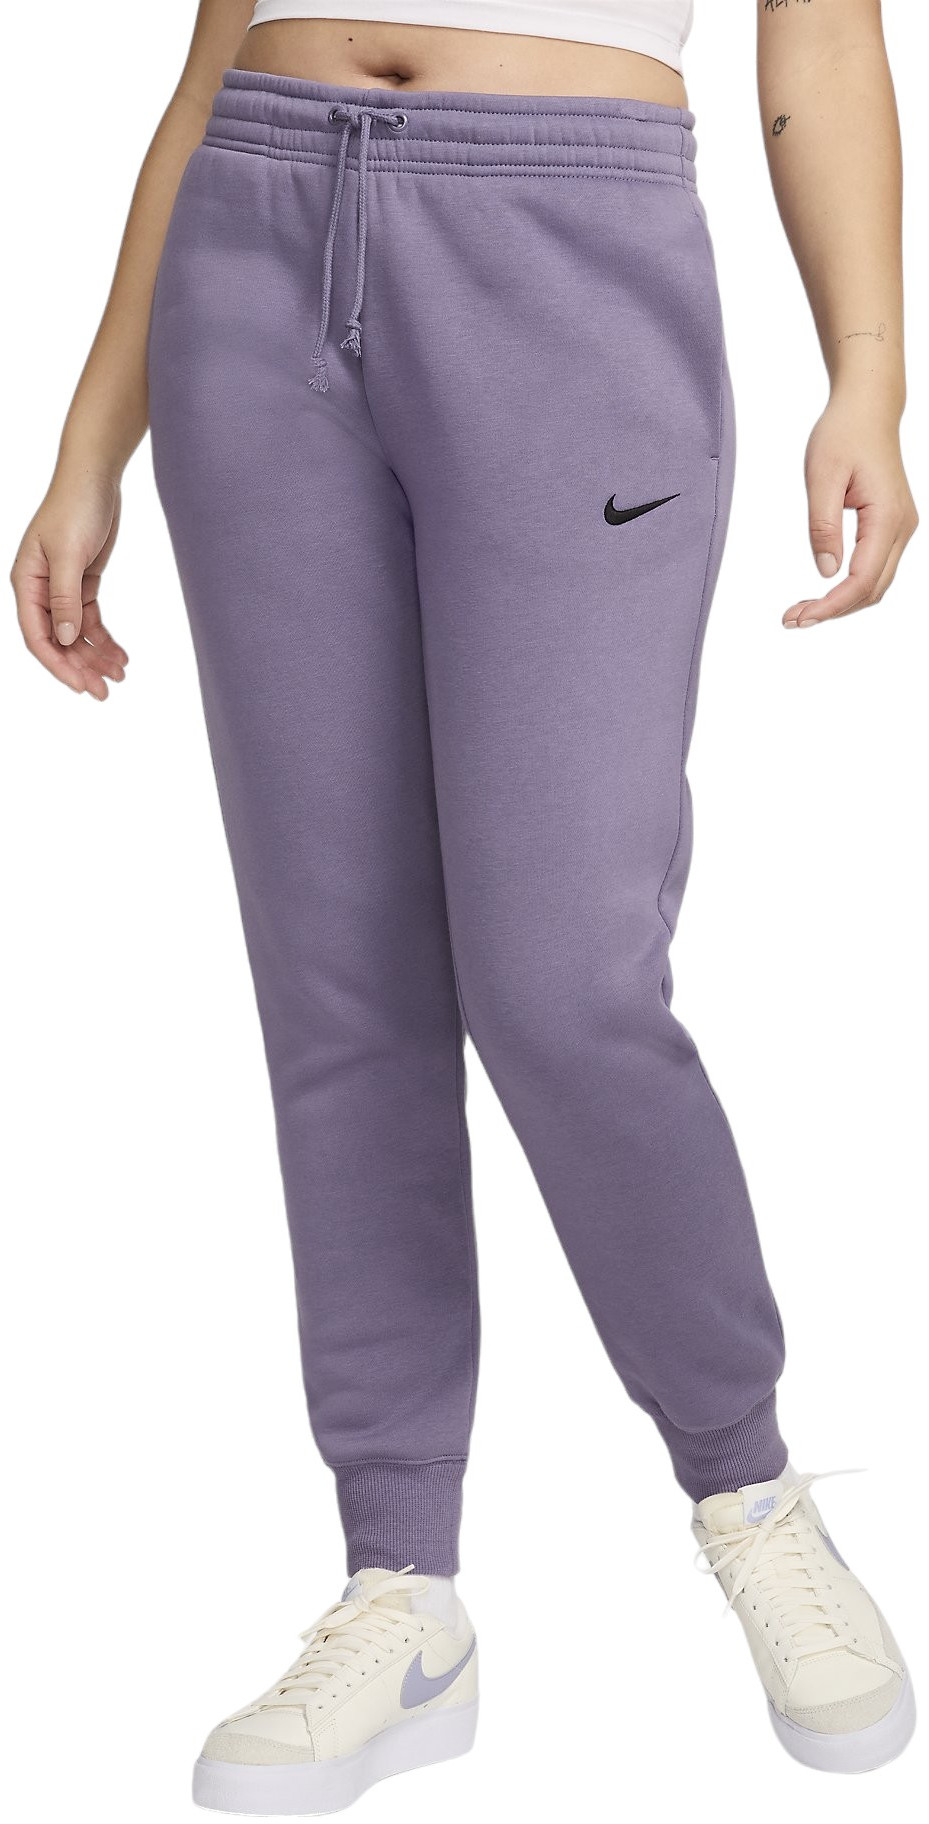 Spodnie Nike W NSW PHNX FLC MR PANT STD